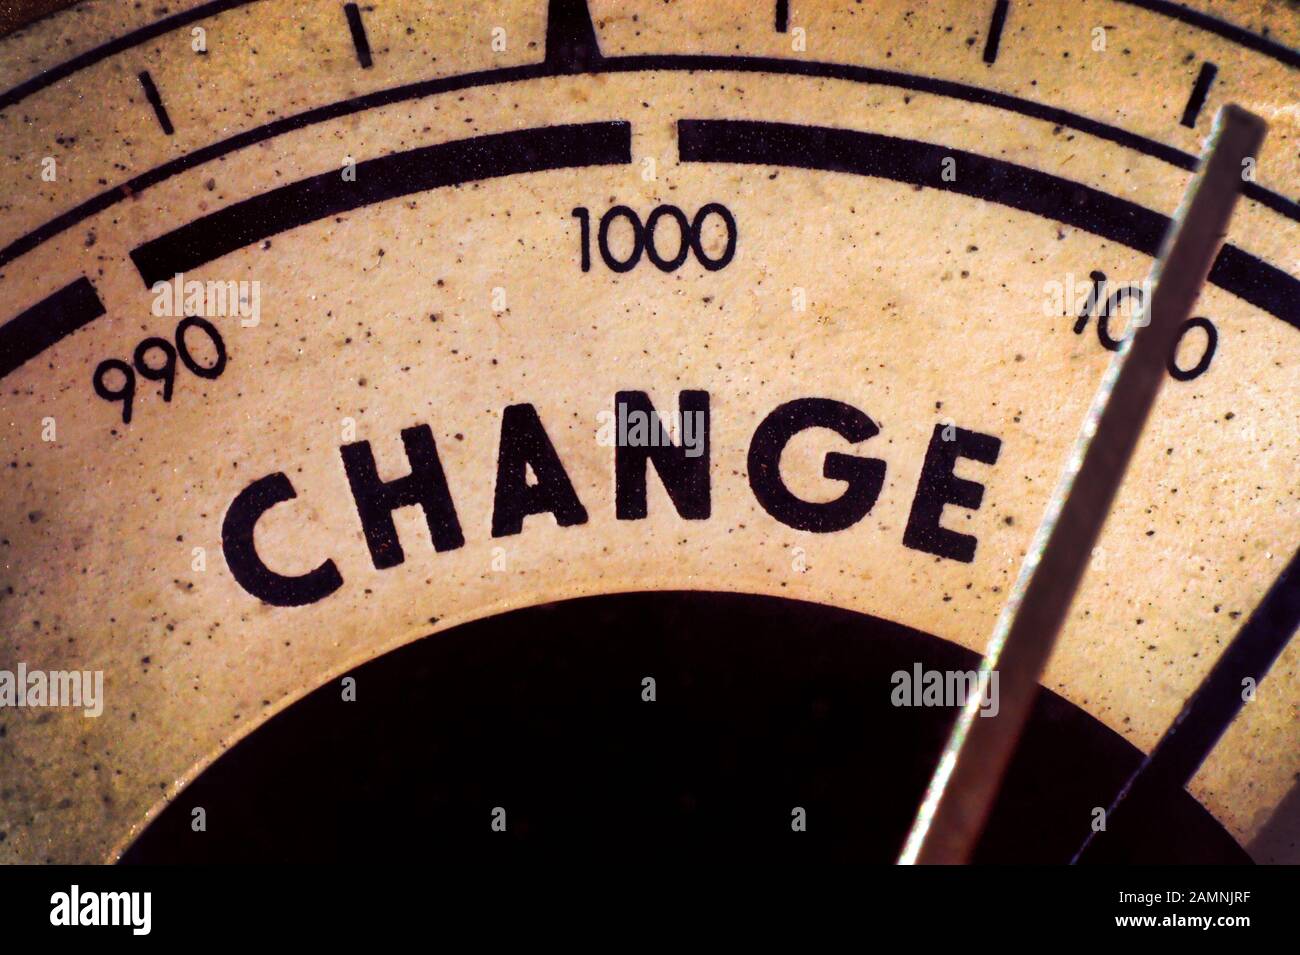 Detalle de primer plano de un barómetro que muestra el cambio. Concepto de cambio y Transición. Foto de stock